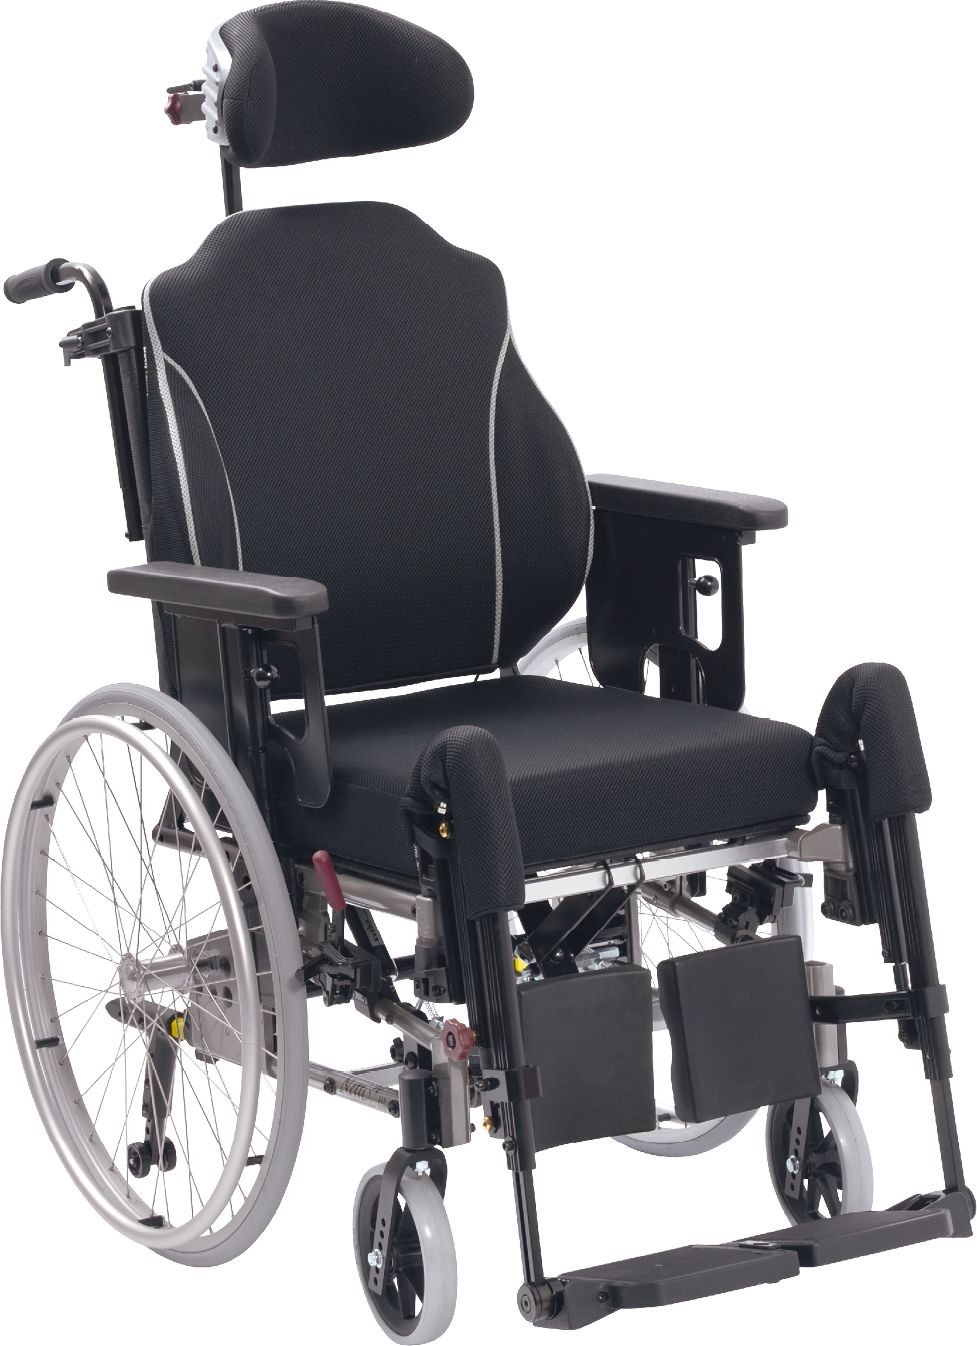 Netti Wózek inwalidzki specjalny z amortyzowaną ramą i przesuwaną płytą siedziska - duży zakres regulacji, komfortowa poduszka Netti UNO, oddychająca tapice